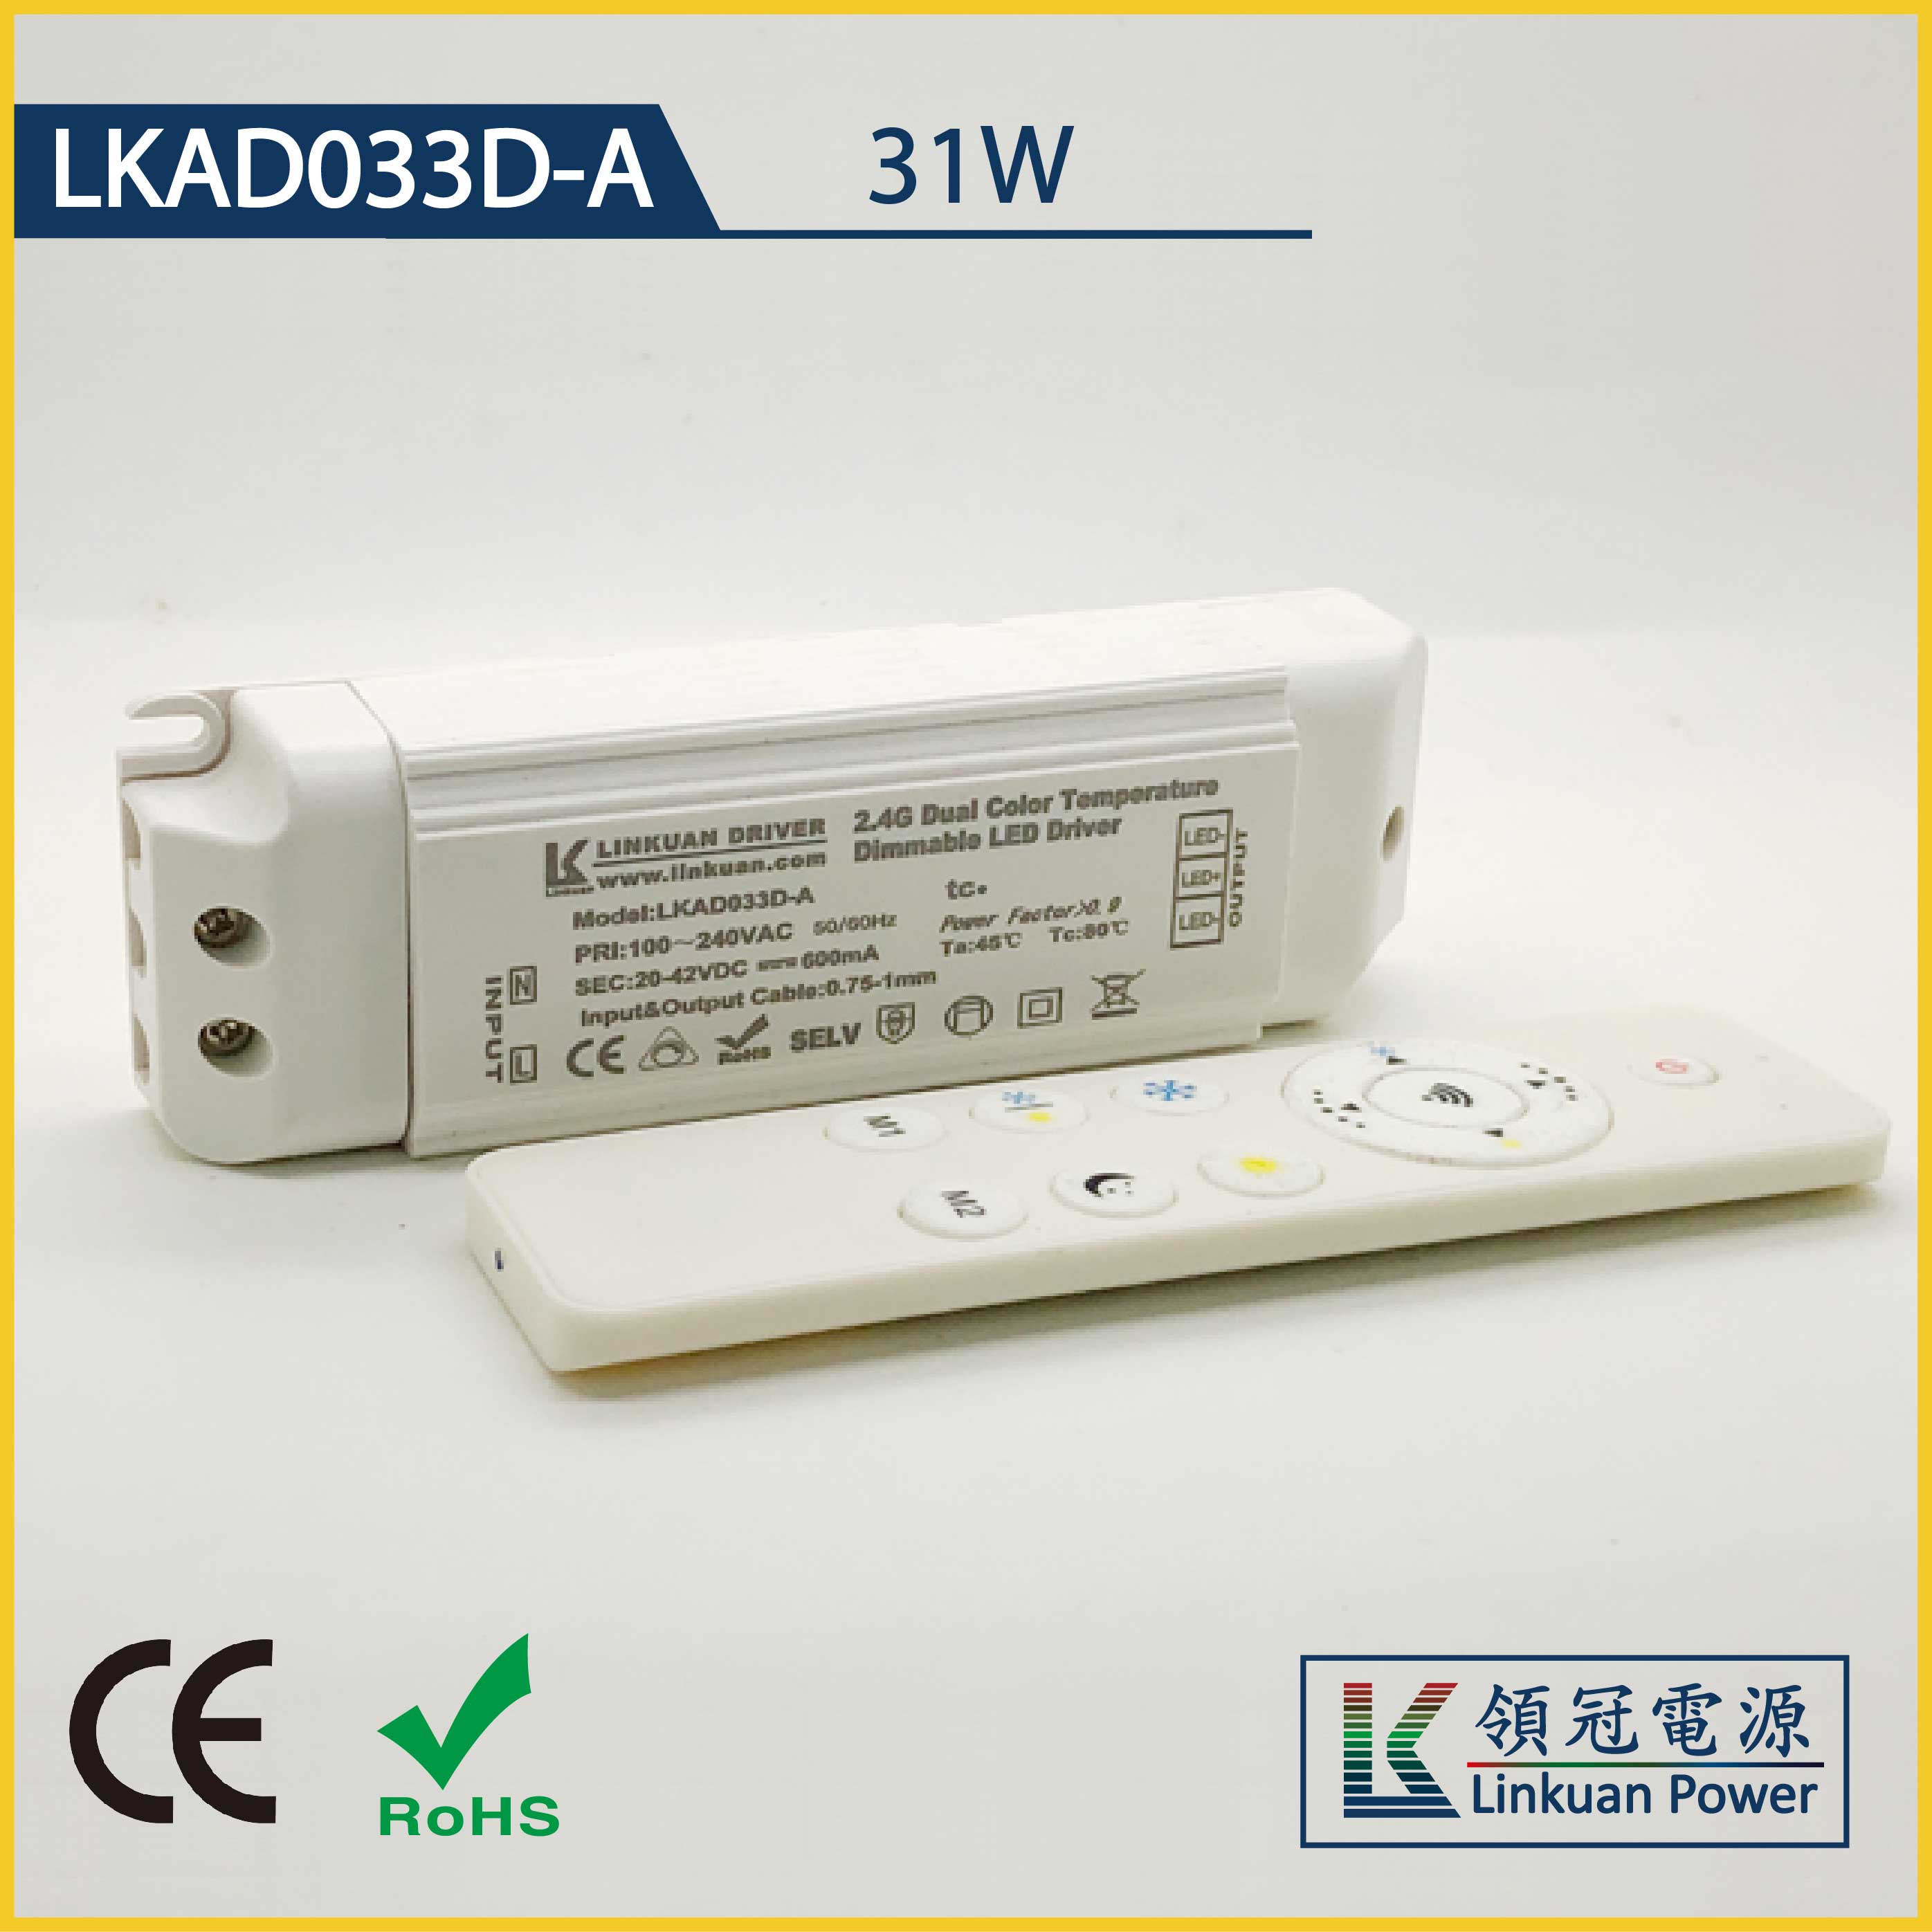 LKAD033D-A 31W 5-42V 750mA CCT Adjusting LED drivers